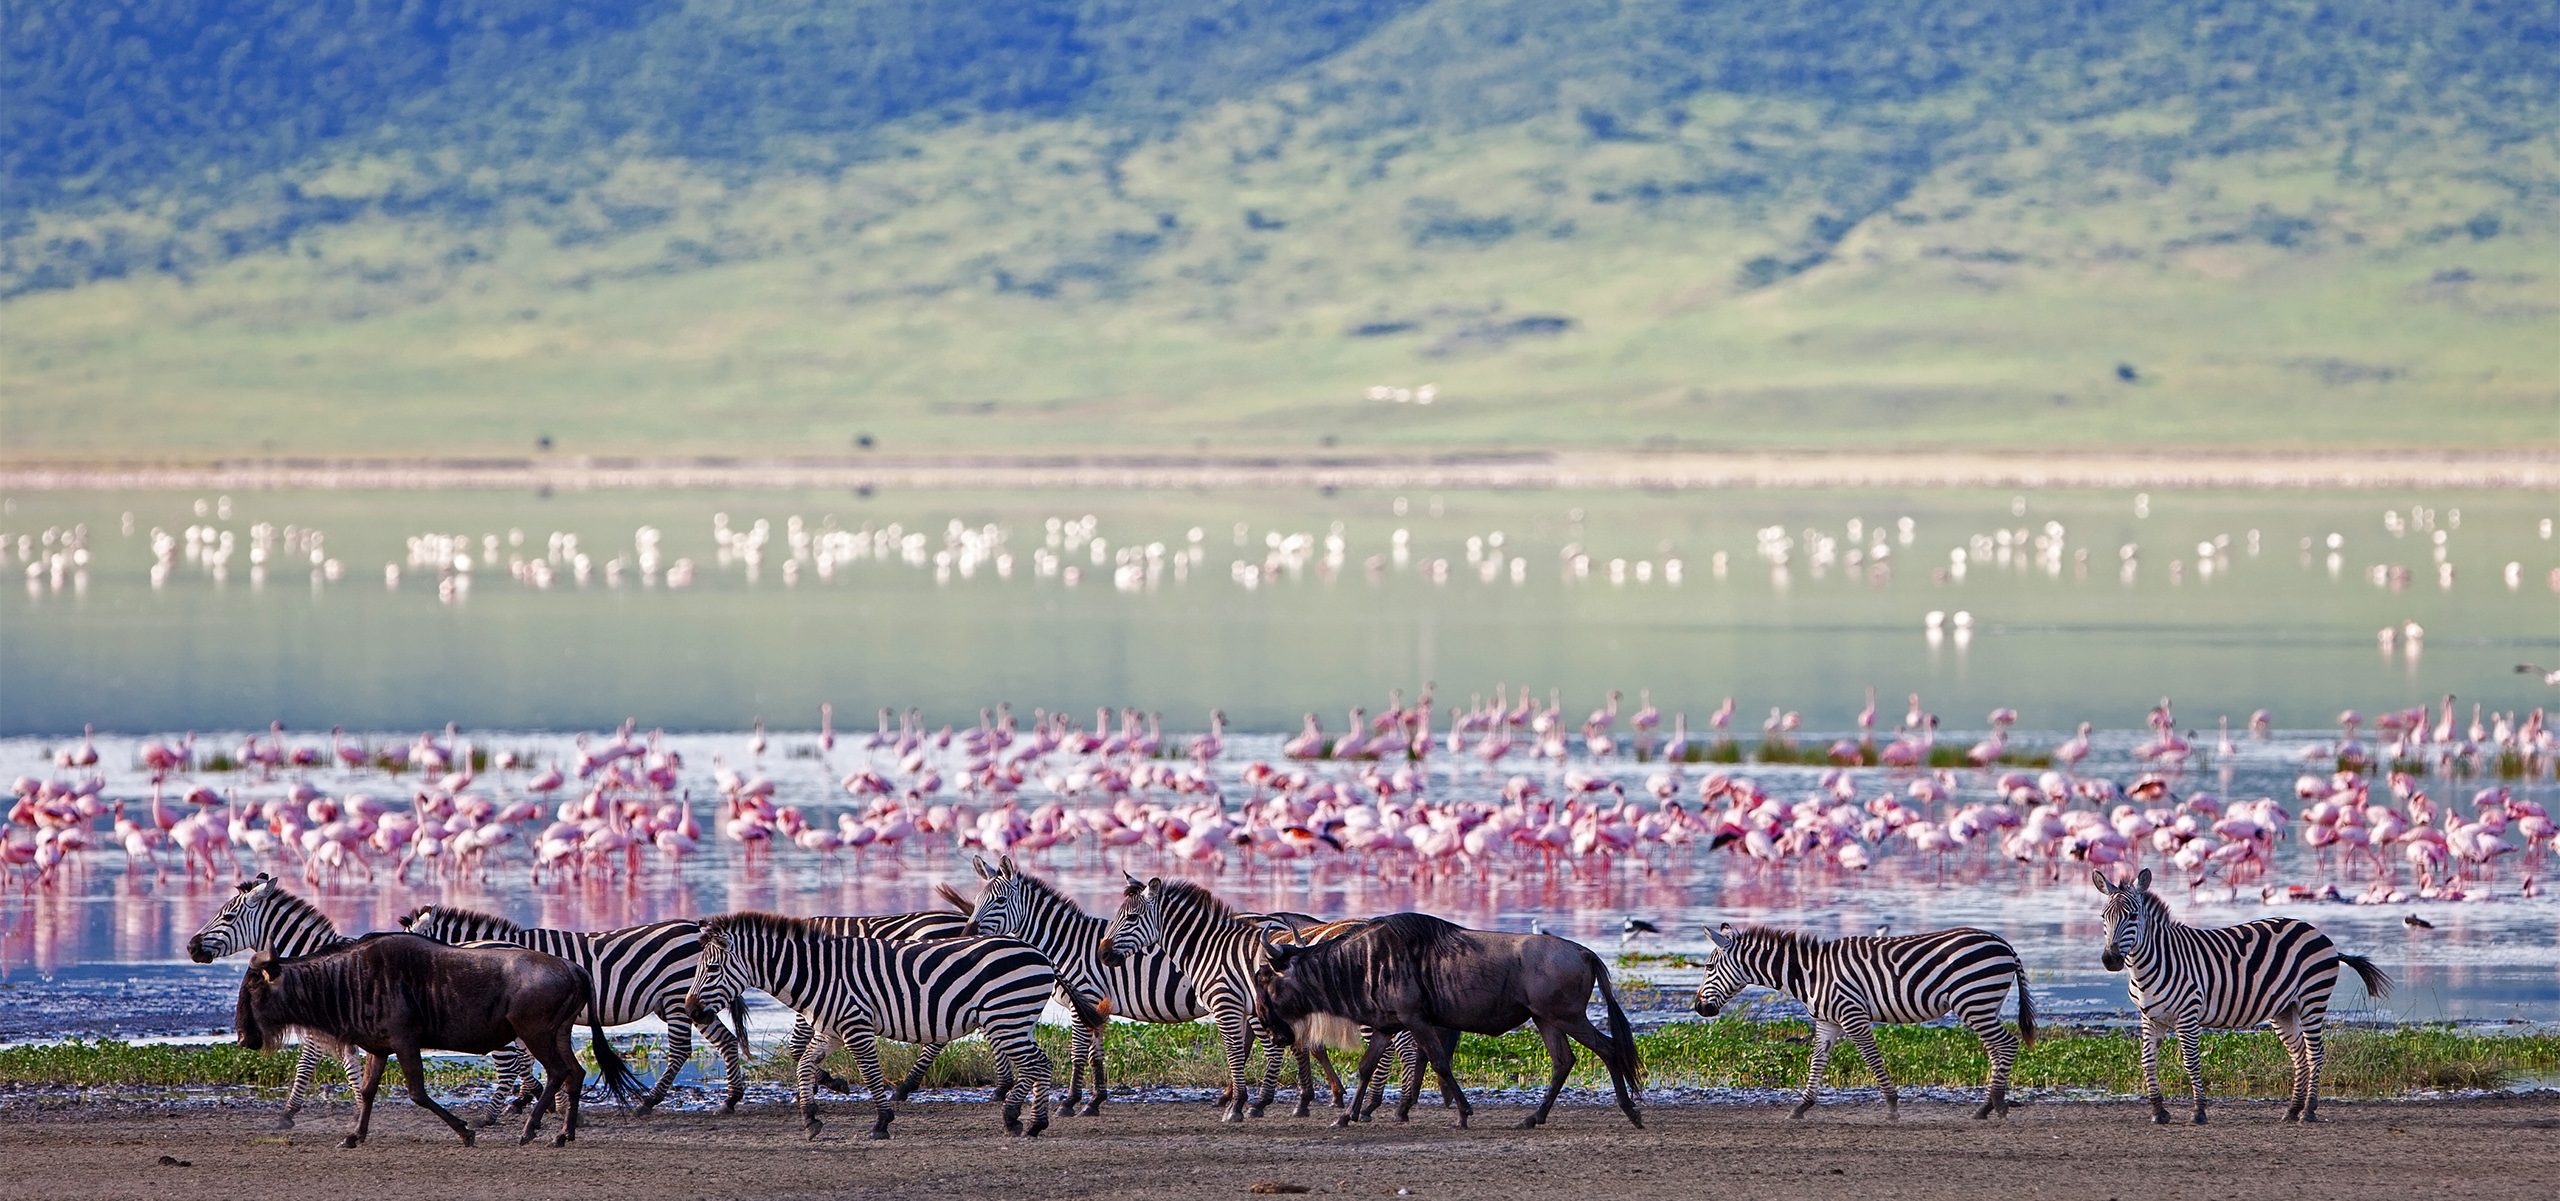 Tanzania_Ngorongoro_Lake Manyara